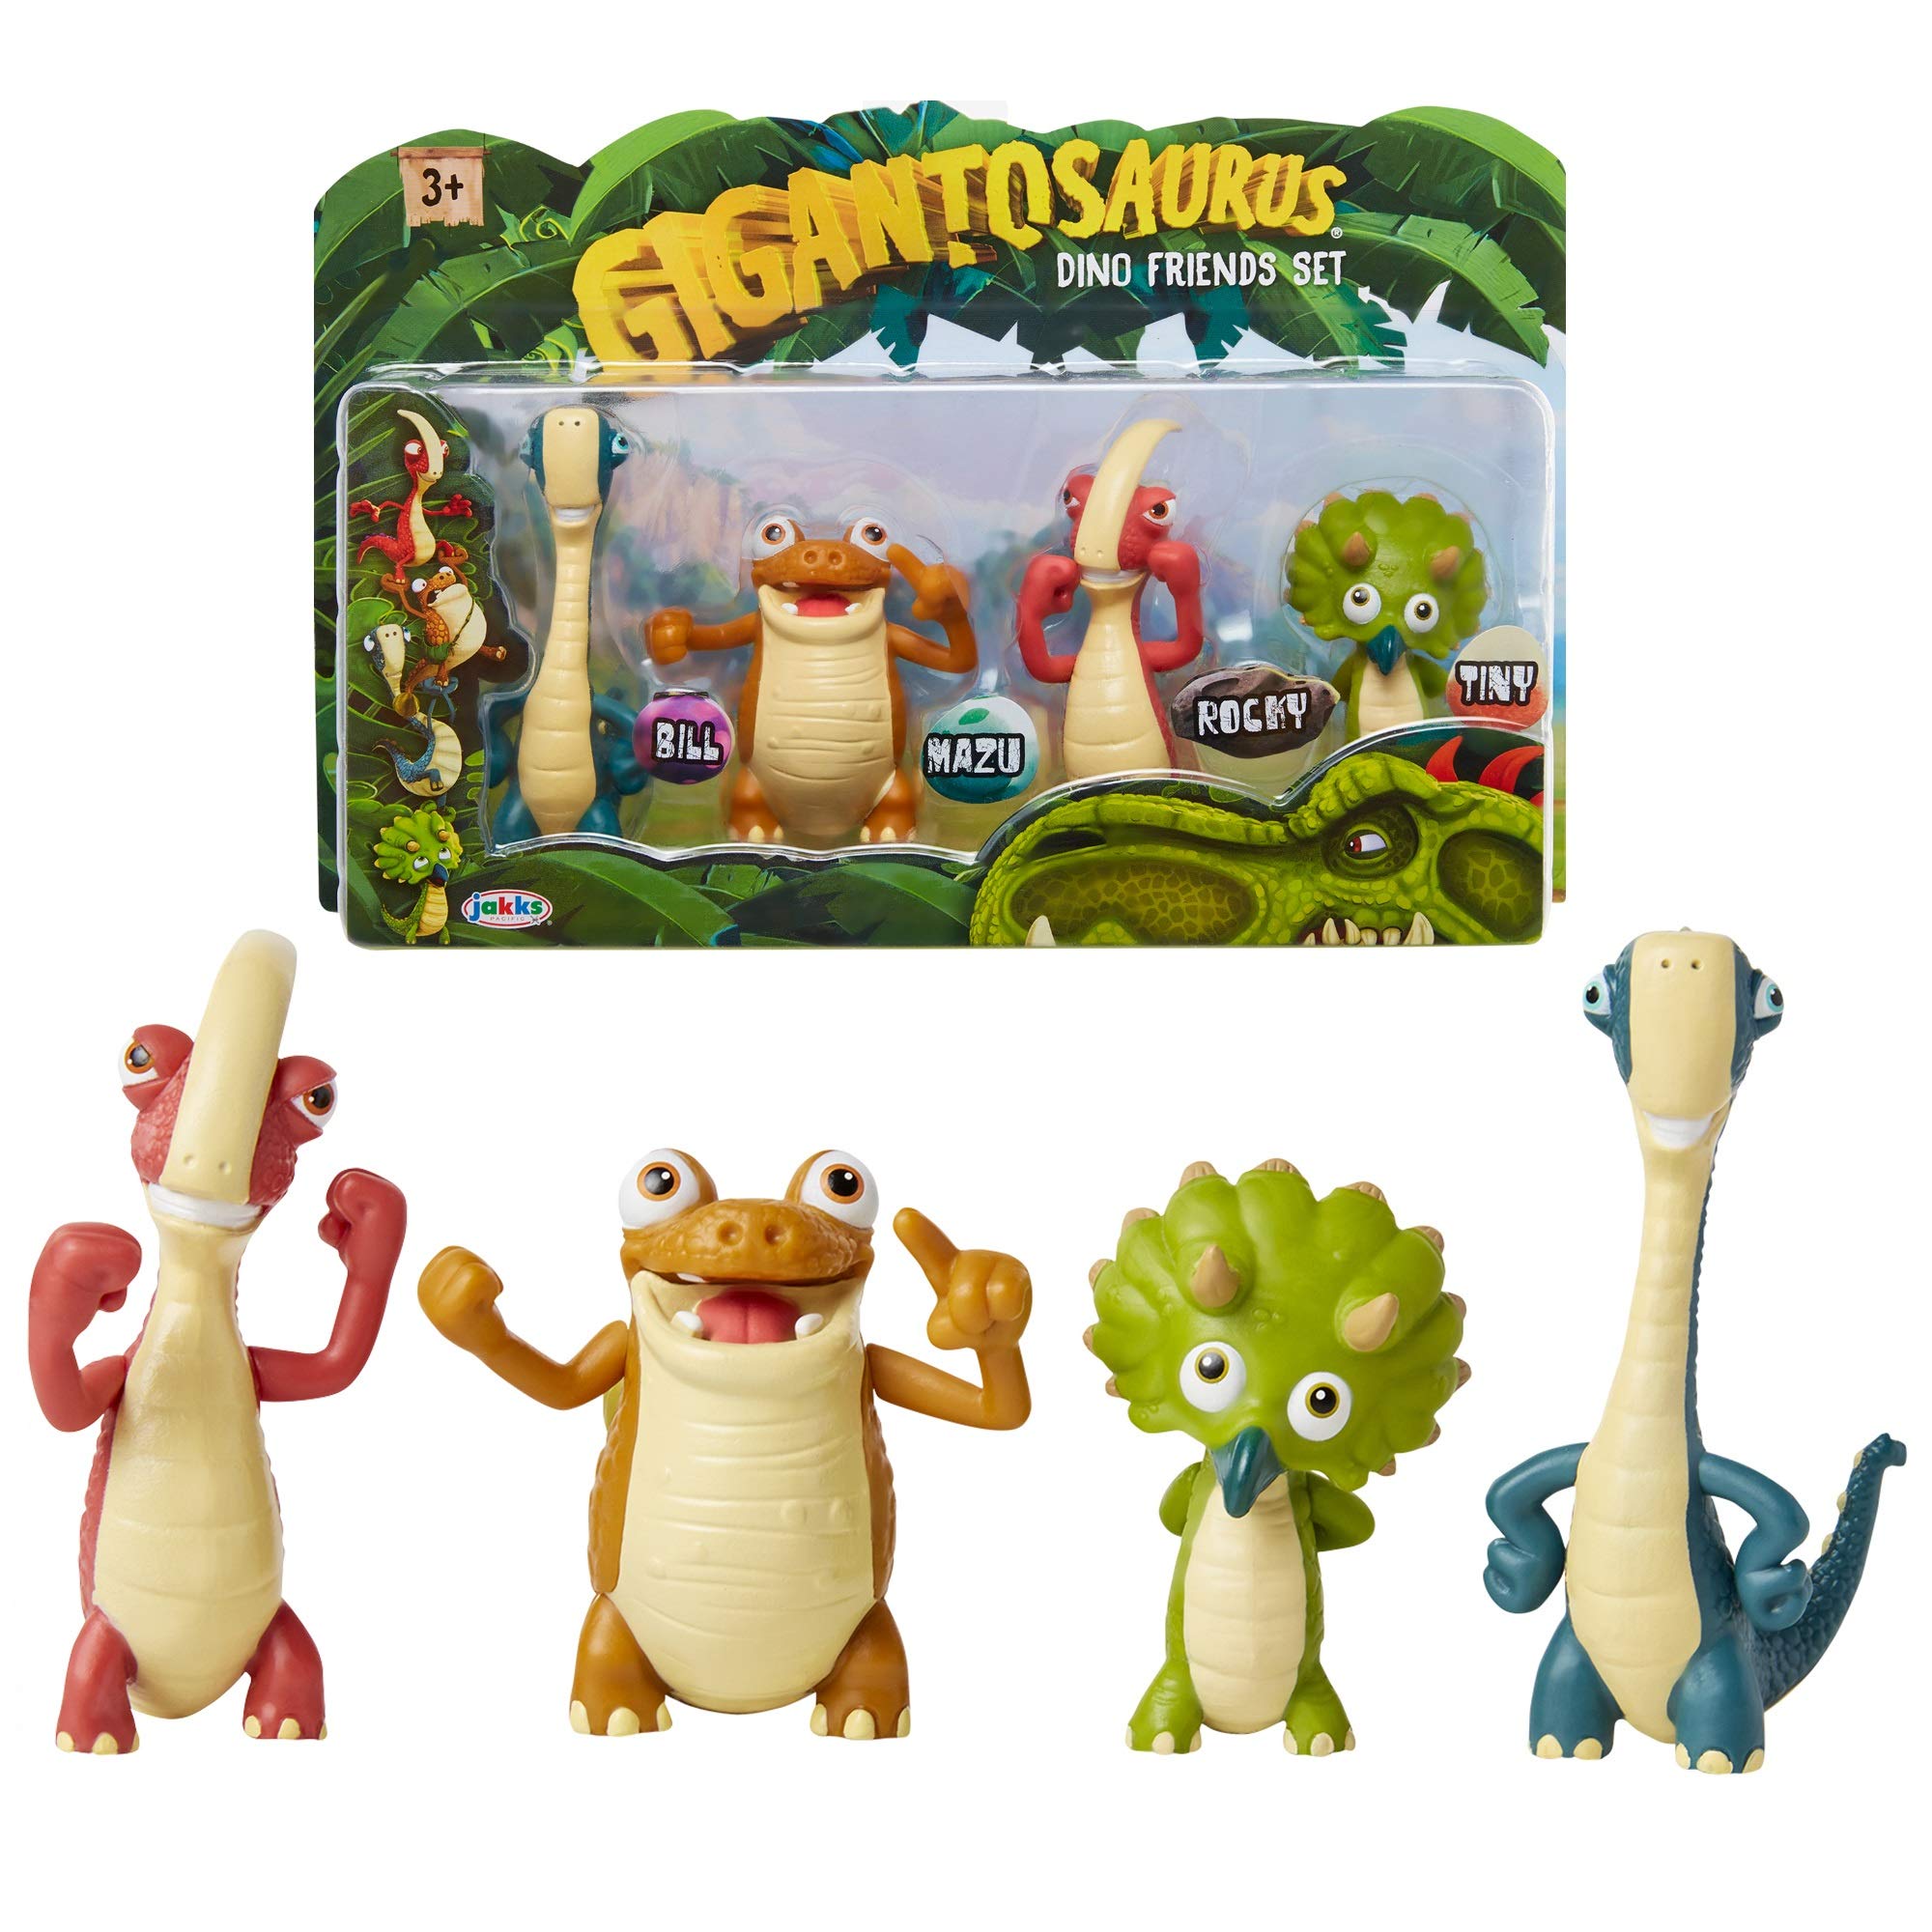 Gigantosaurus キャラクターフィギュア 4個セット 関節式アーム & テール付き 恐竜のおもちゃスタンド 高さ約3~3.5インチ 恐竜おもちゃ